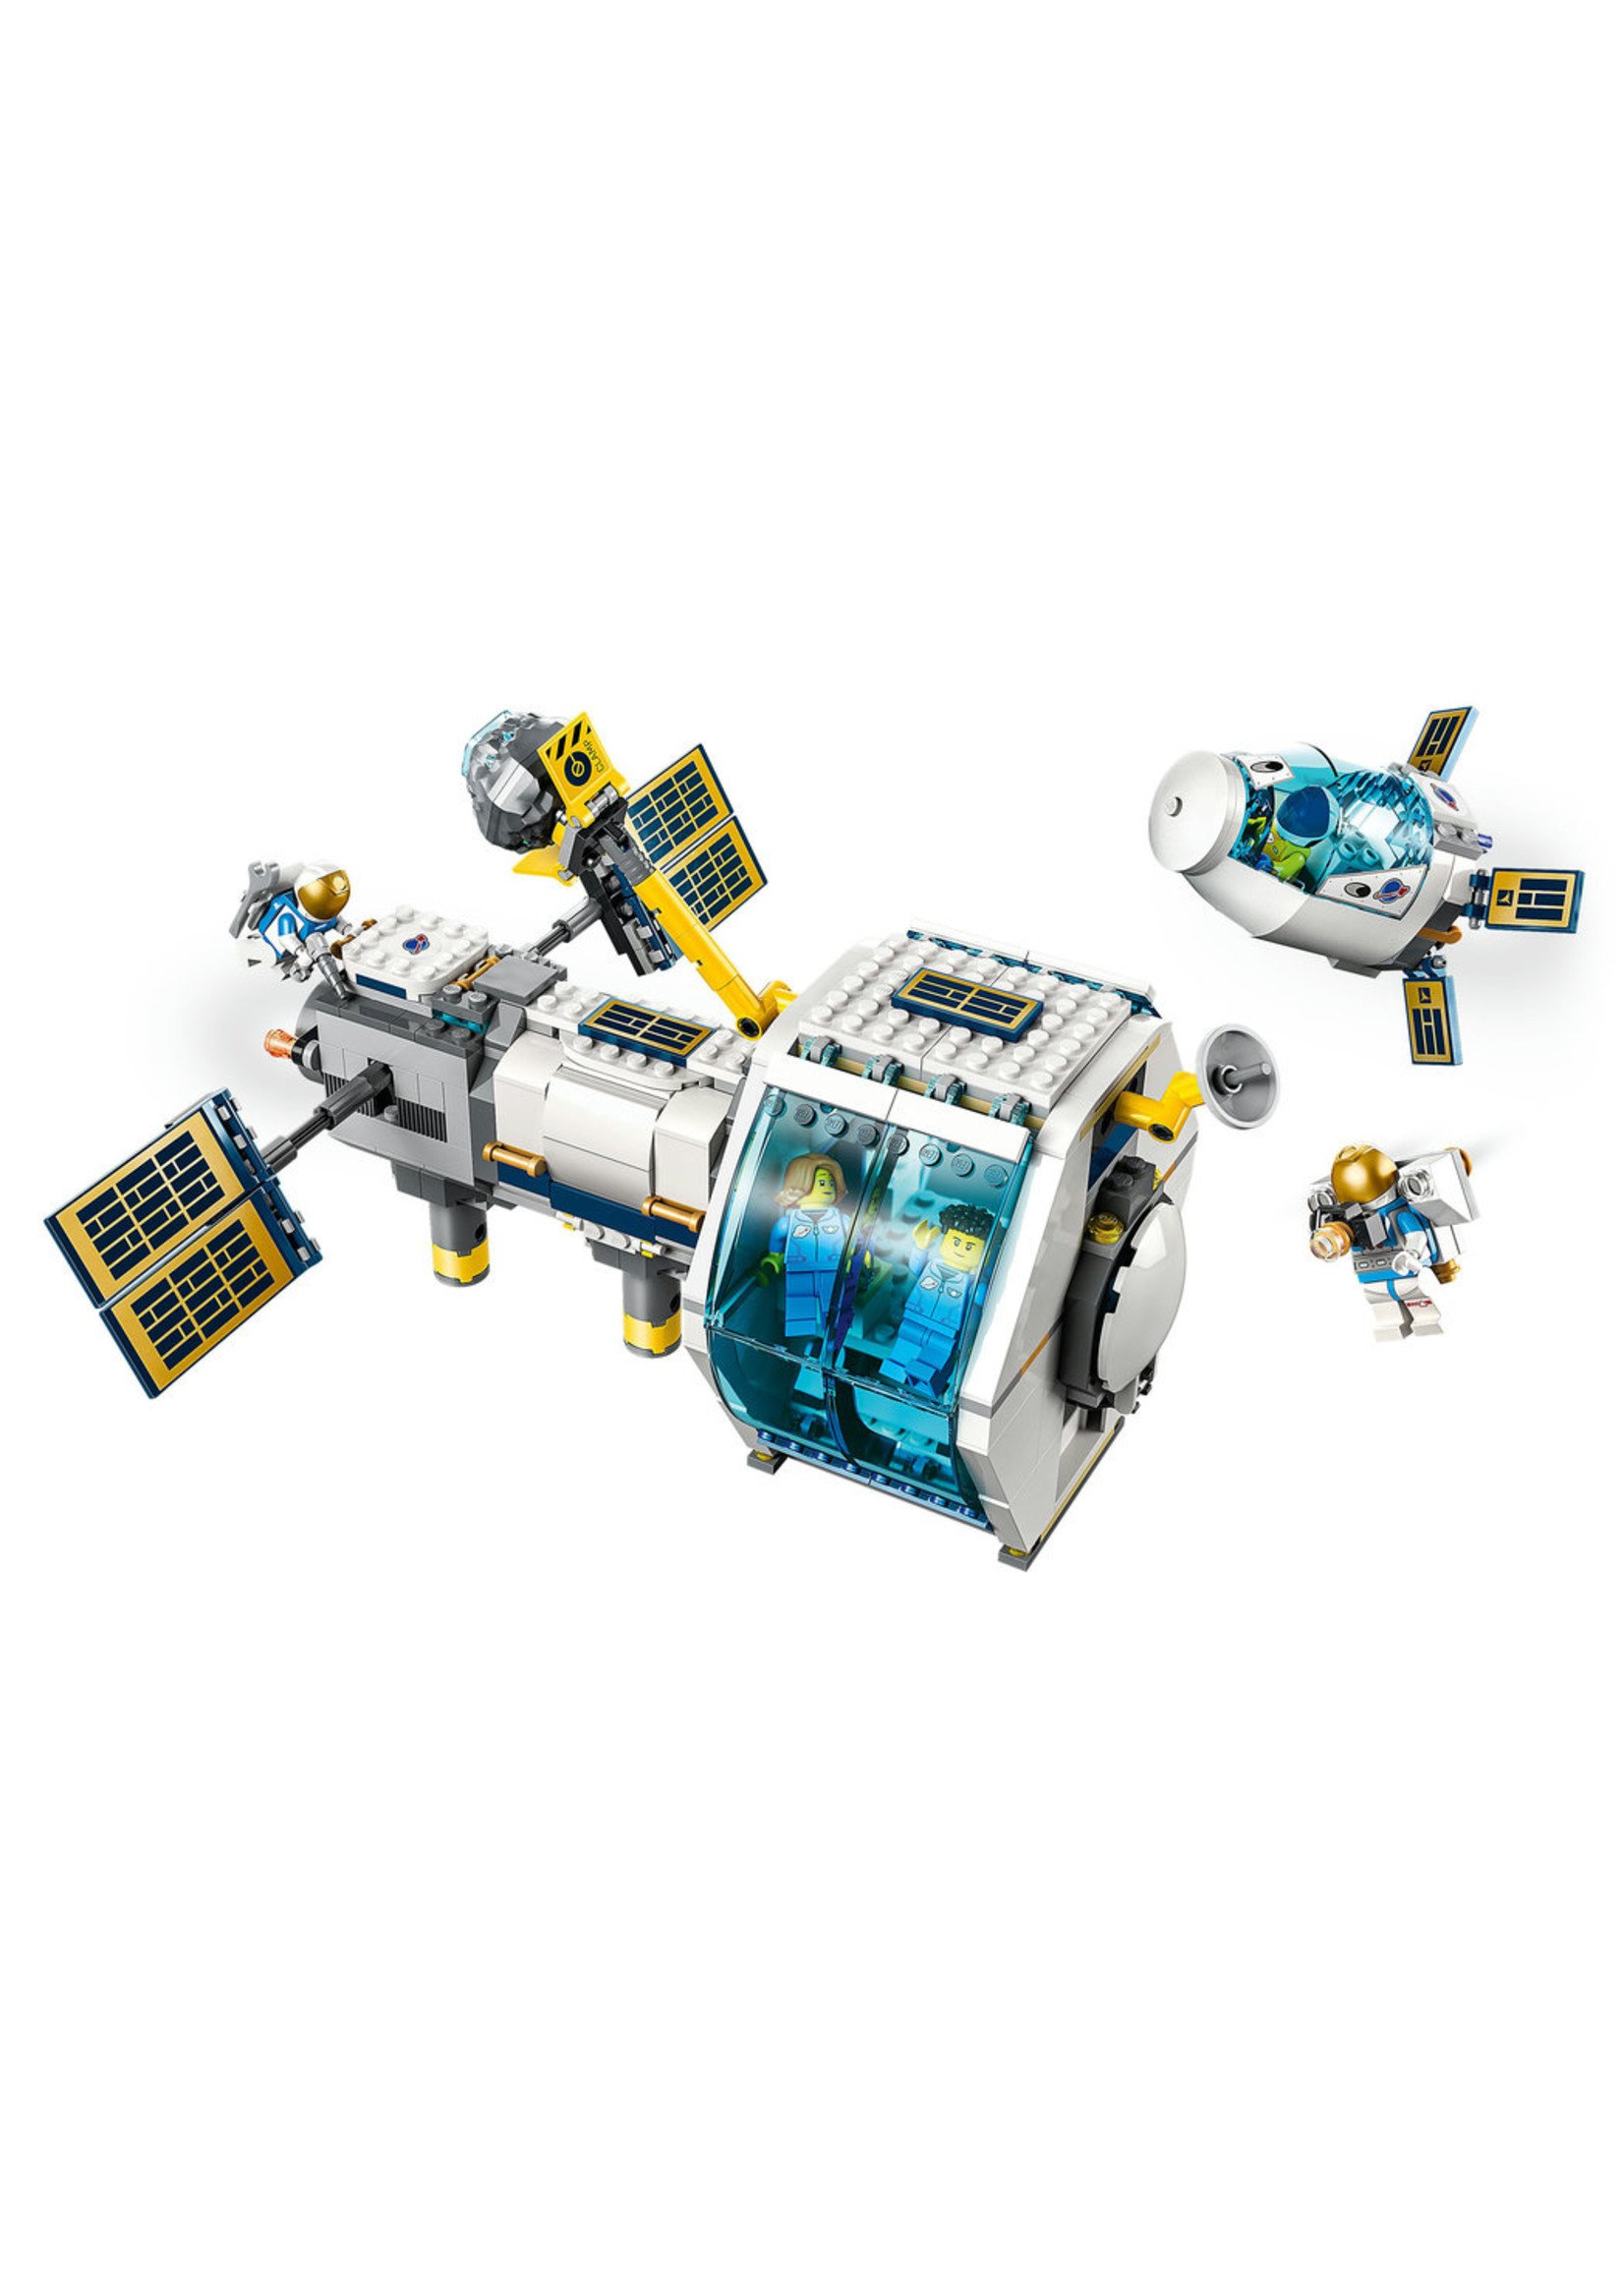 LEGO 60349 - Lunar Space Station